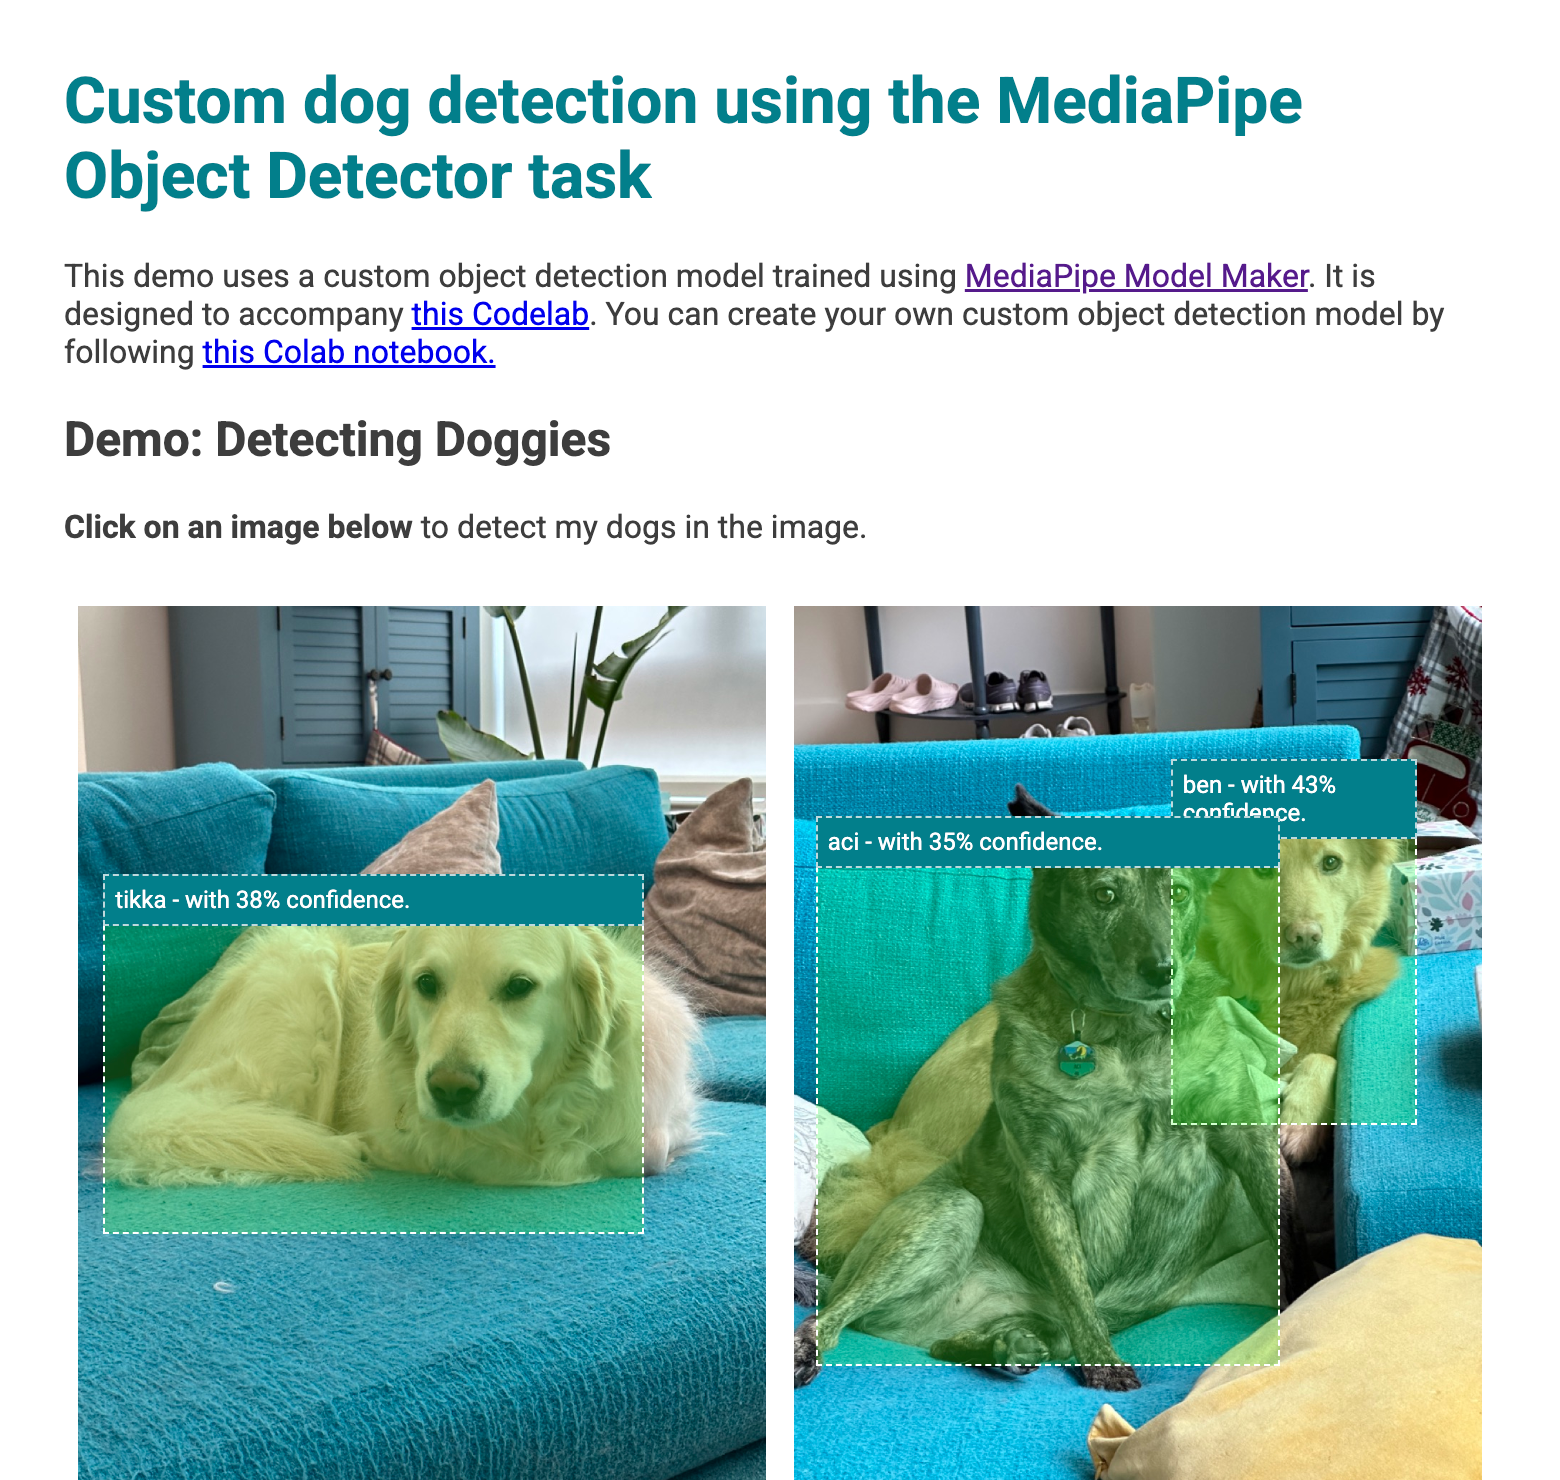 Aperçu de l'application Web avec des cadres de délimitation sur les chiens détectés dans les images